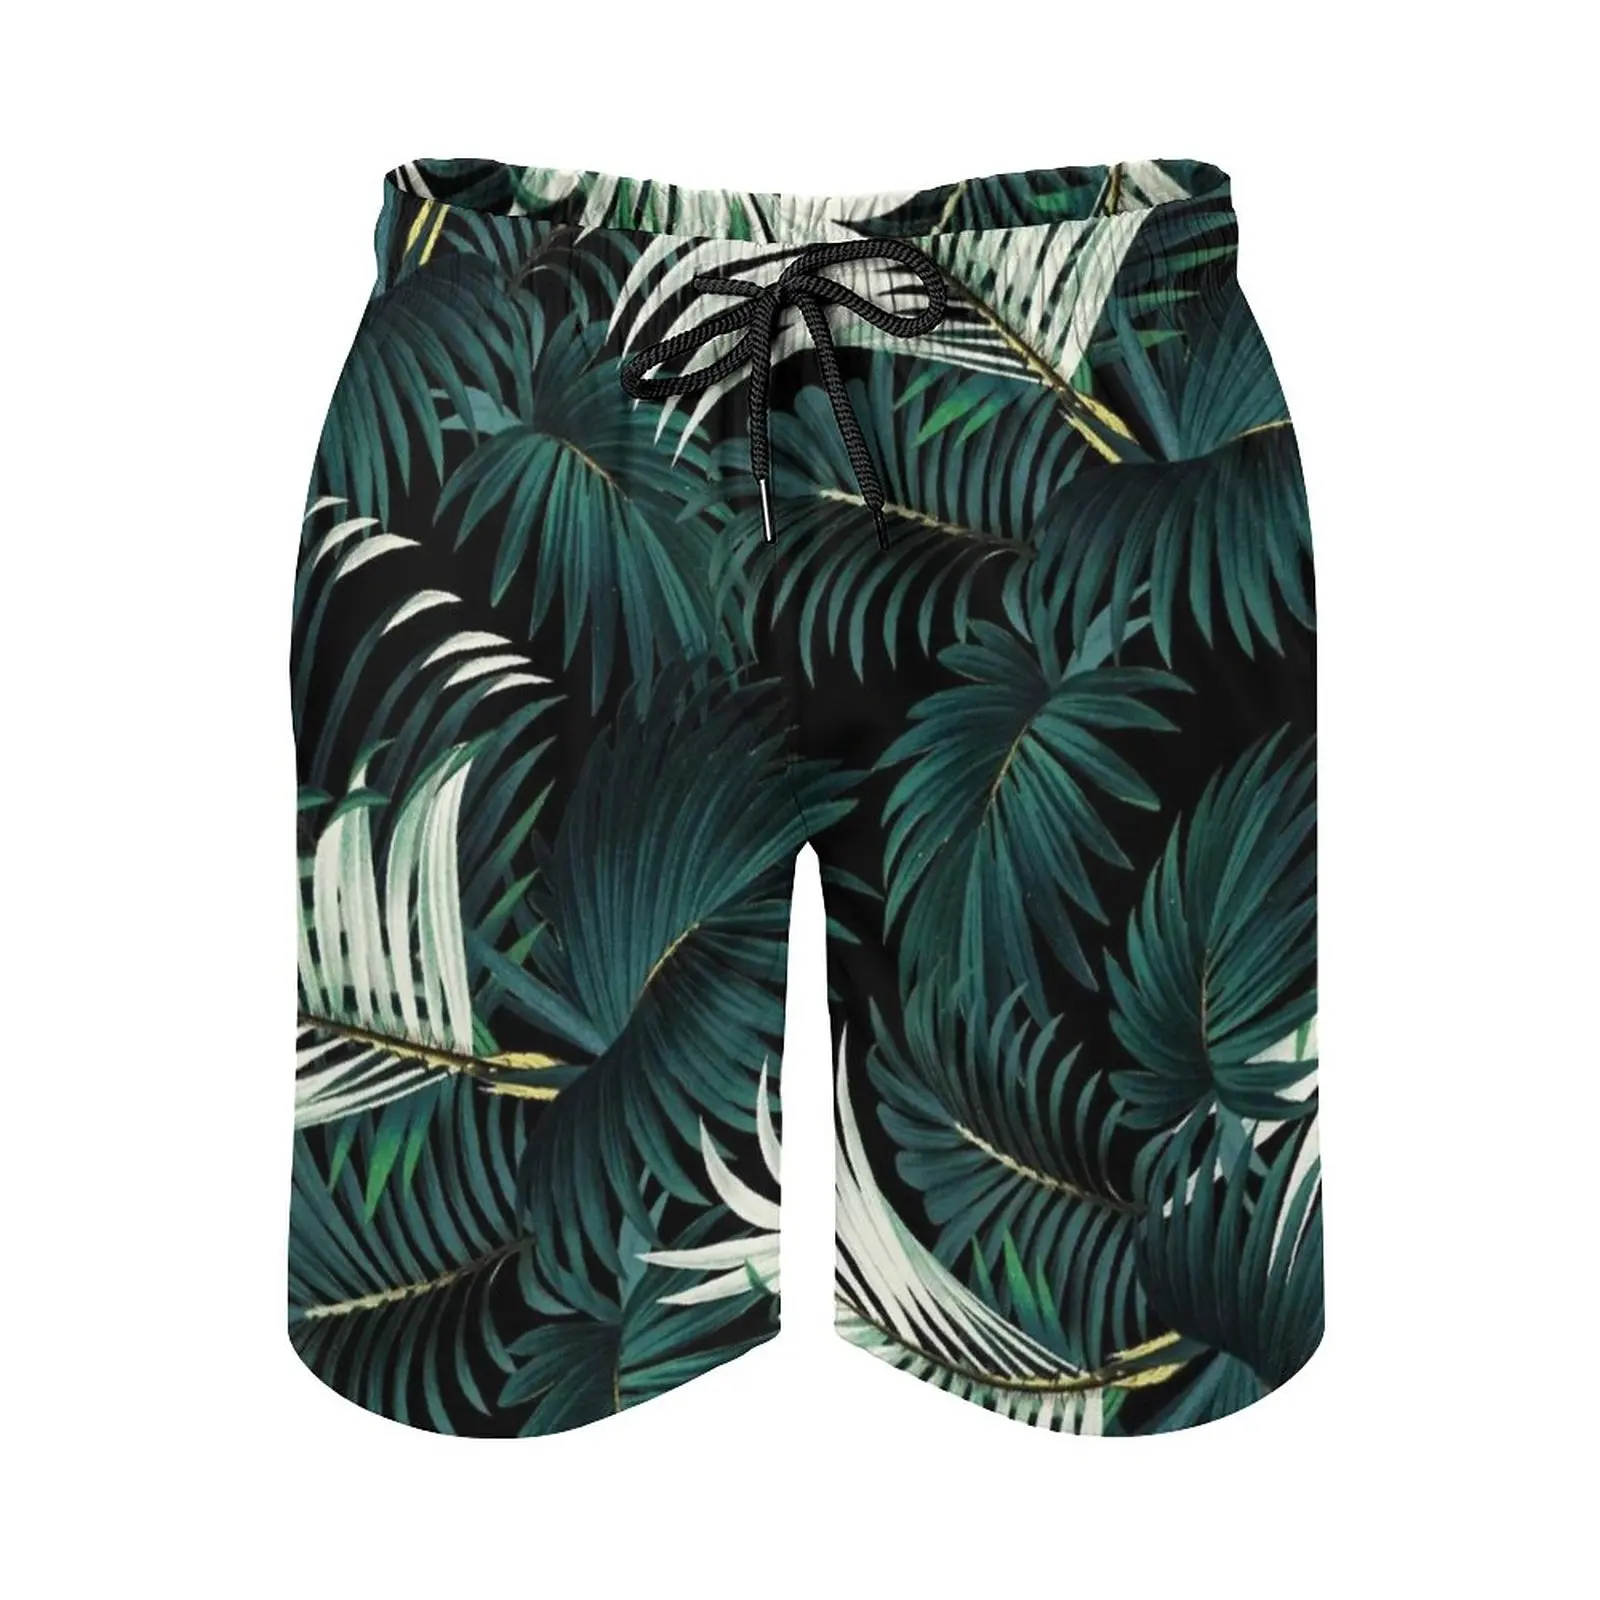 

Мужские пляжные шорты с тропическими джунглями, ночные штаны с сетчатой подкладкой для серфинга, плавки с тропическим ботаническим рисунком, в винтажном стиле